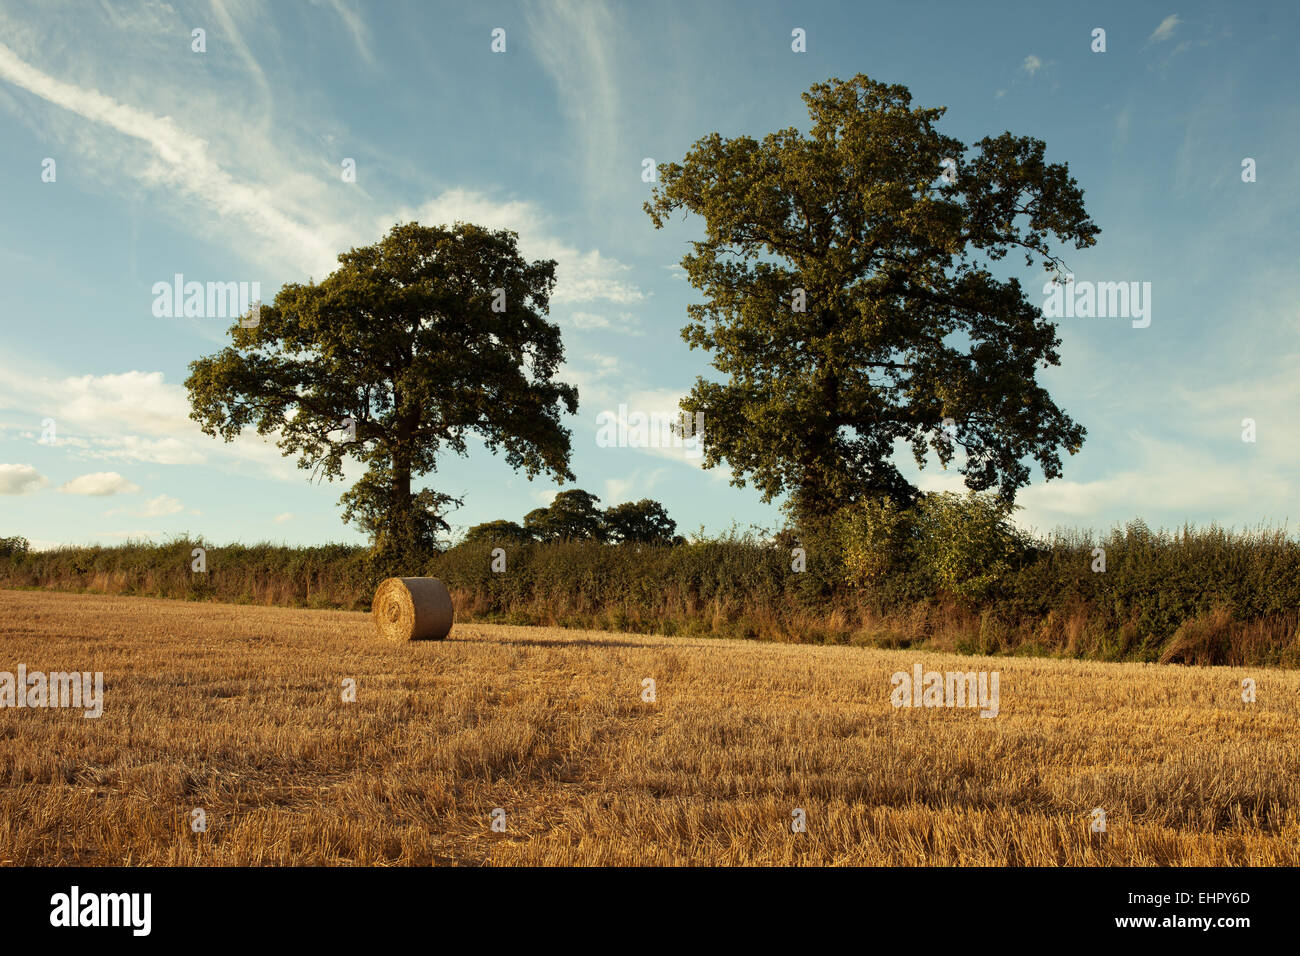 Bottes de foin sur le champ après la récolte, uk Banque D'Images